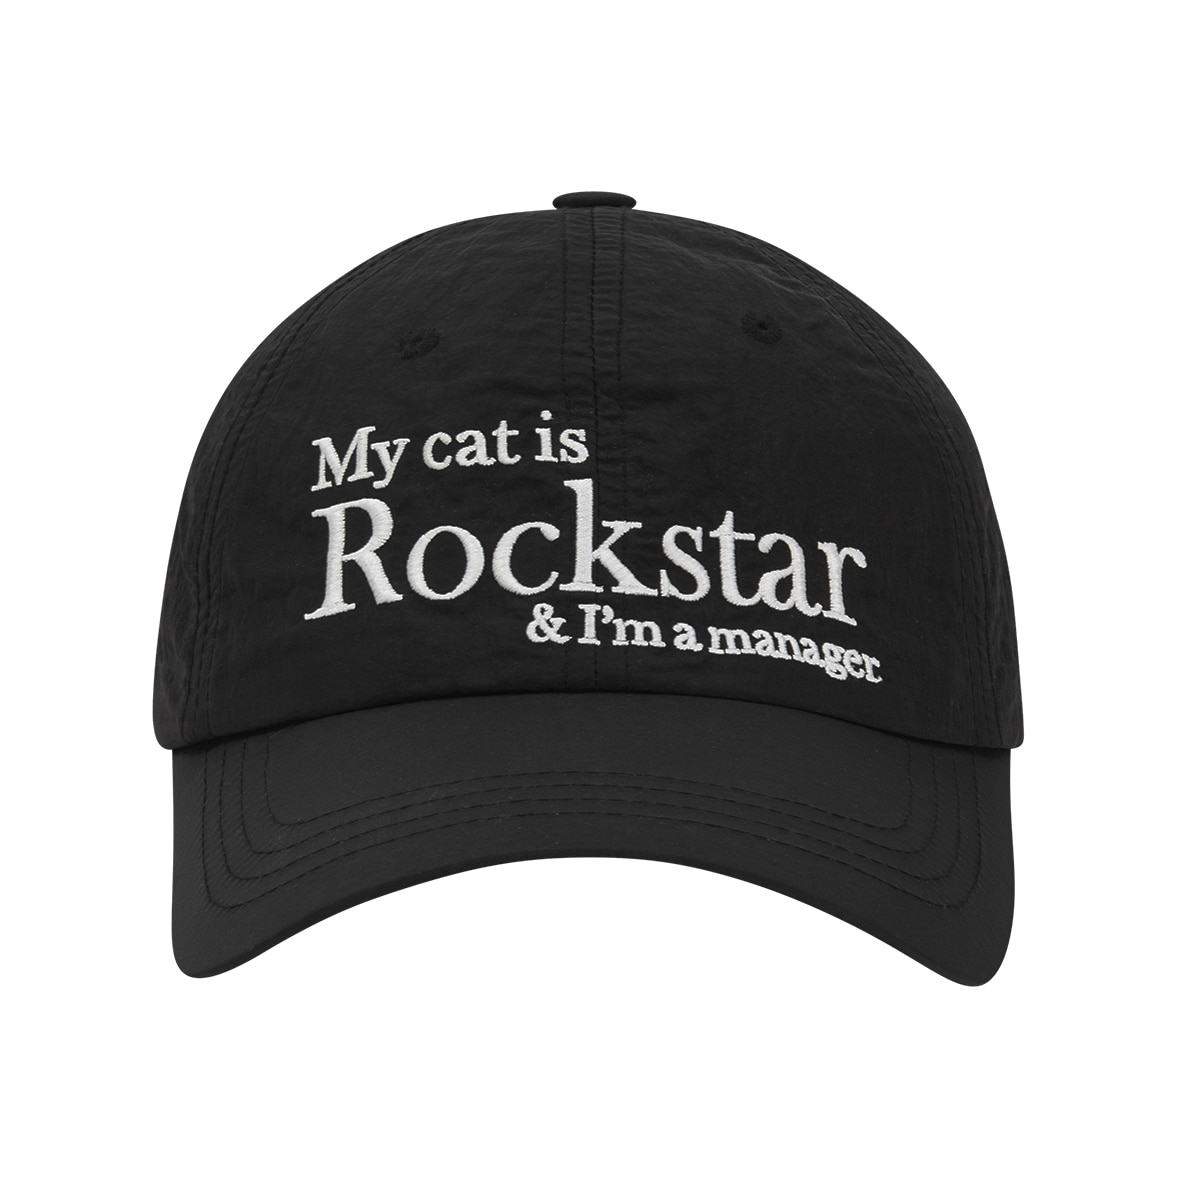 Rockstar cat cap (Black)